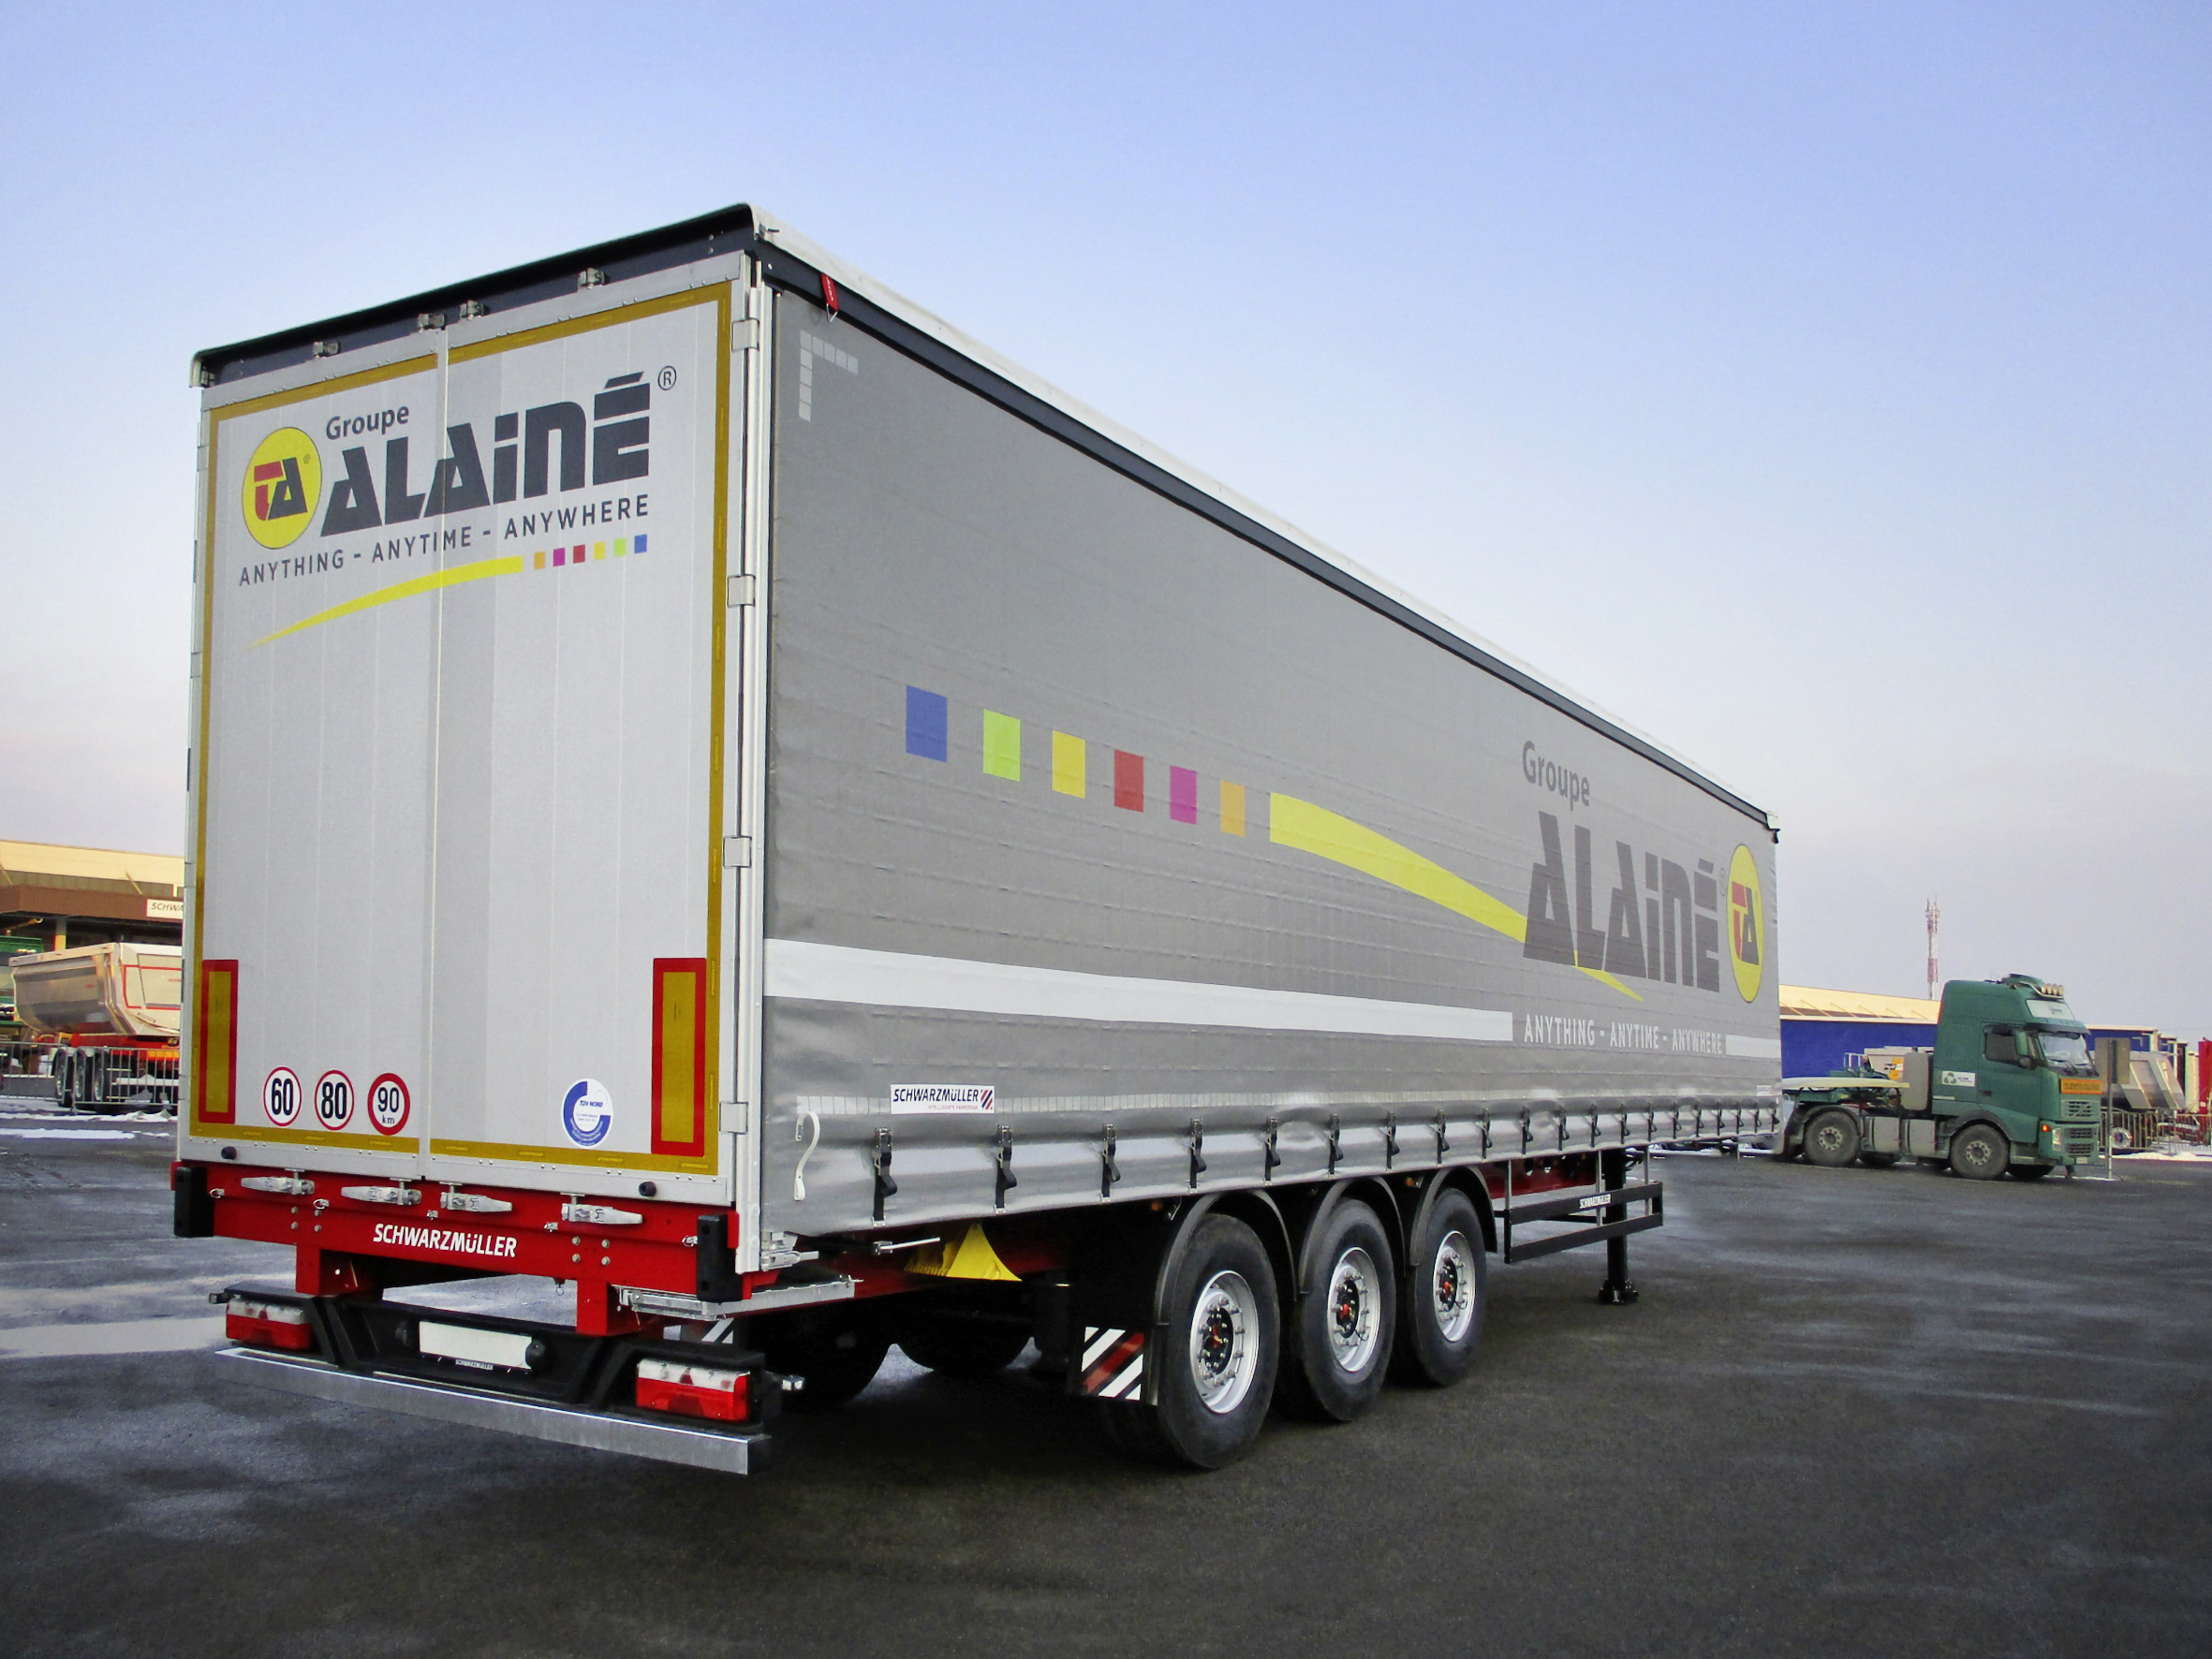 Groupe Alaine bestellt 40 Ultralight-Coiler von Schwarzmüller